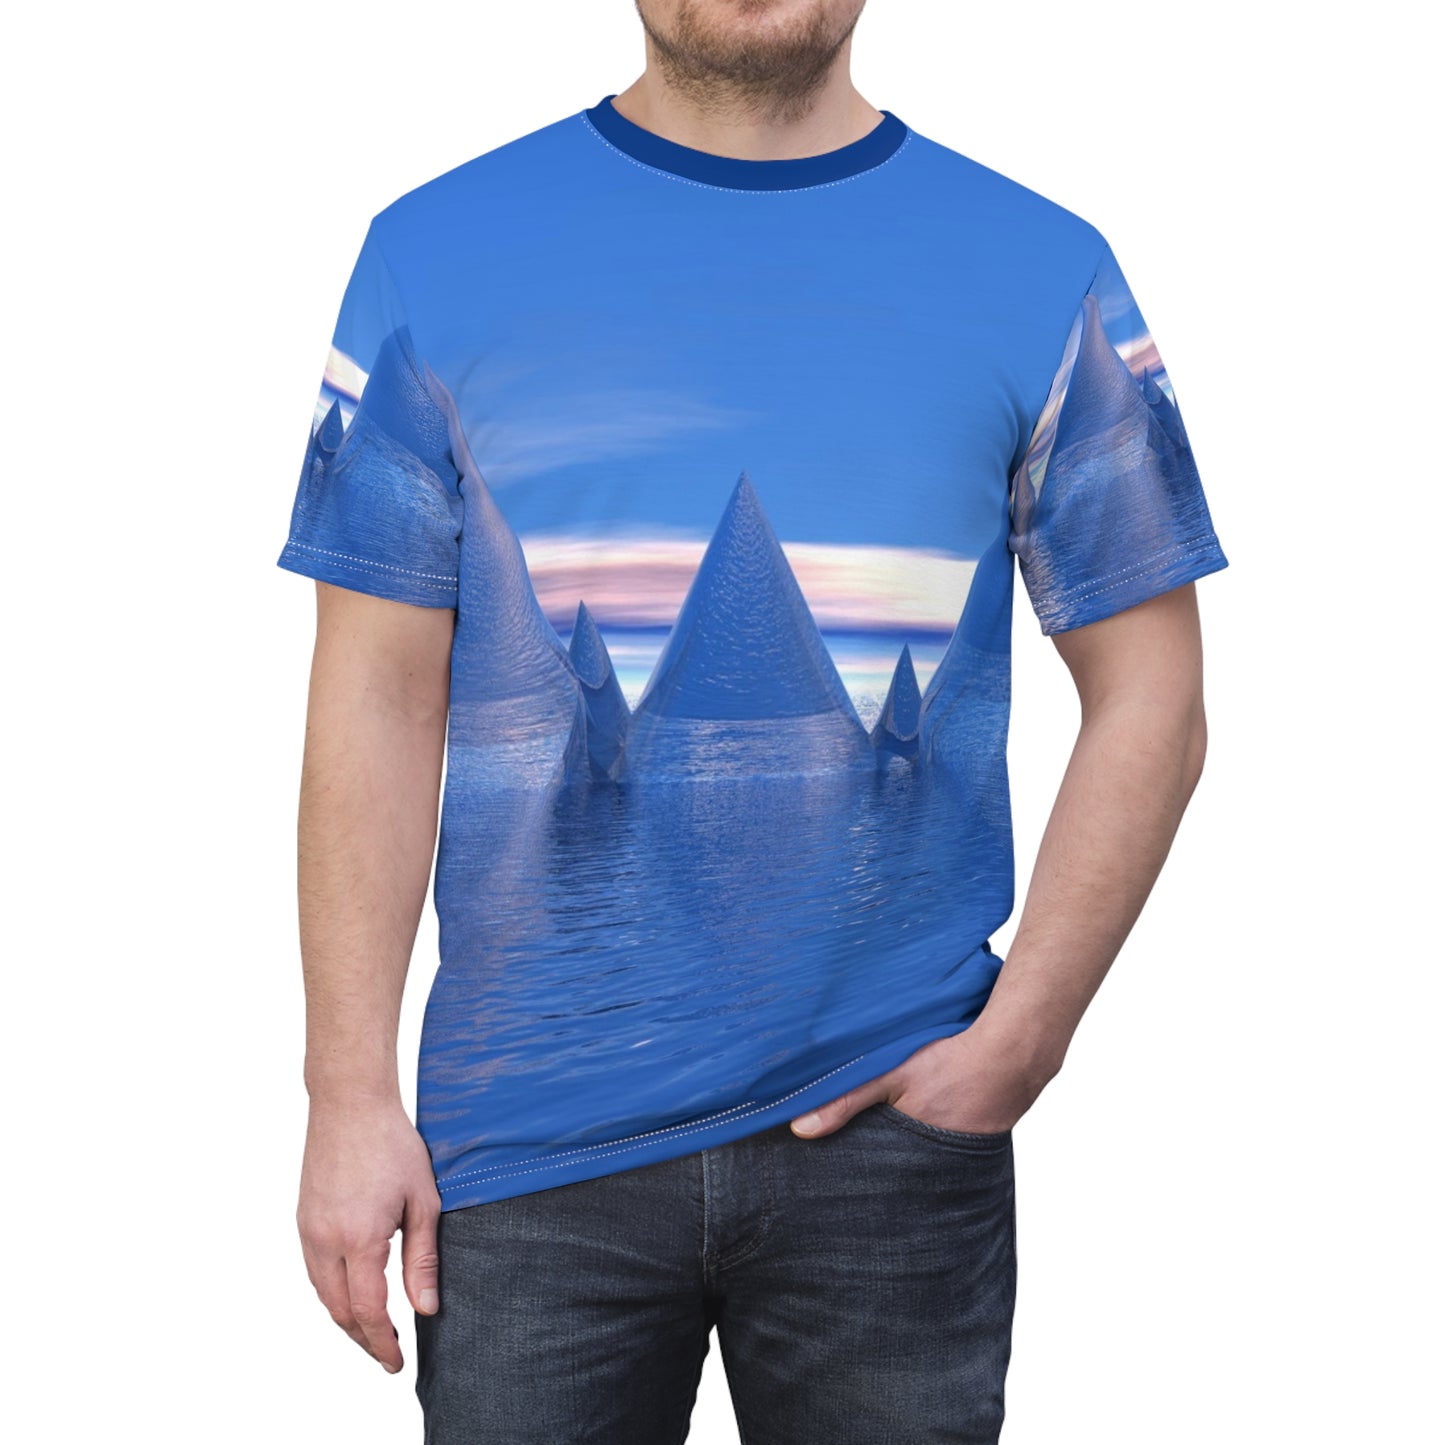 Crystal Peaks Unisex T-Shirt